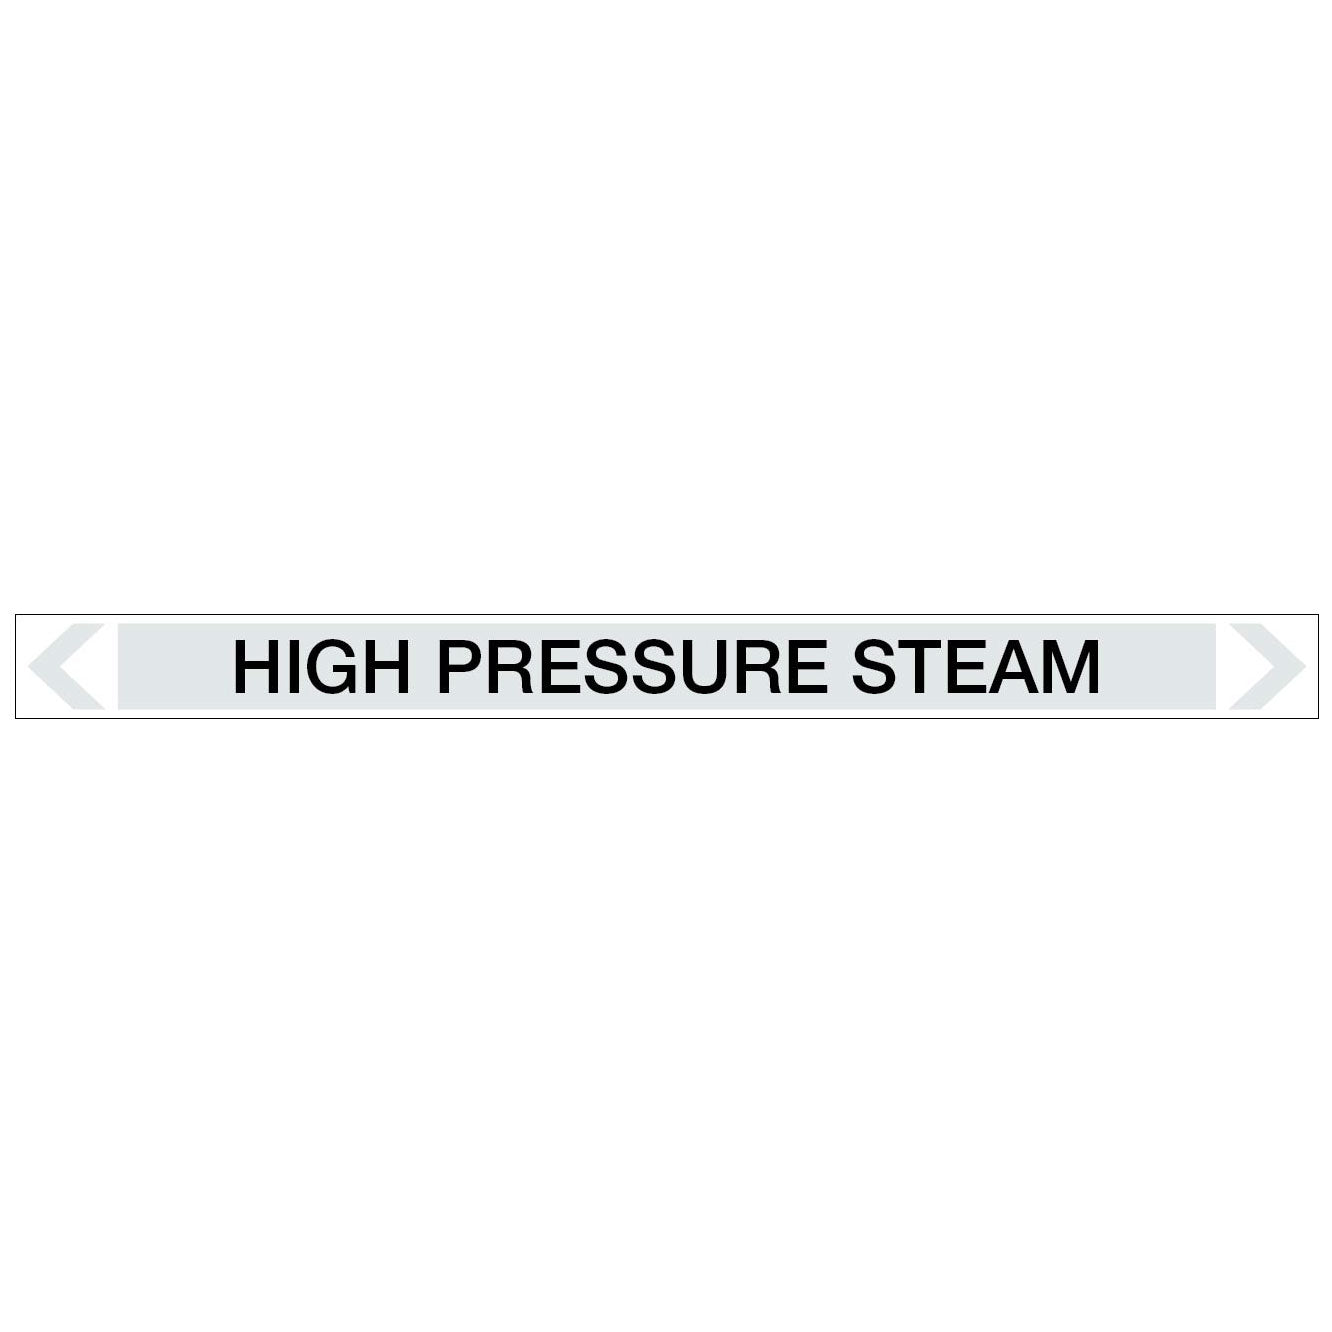 Steam - High Pressure Steam - Pipe Marker Sticker